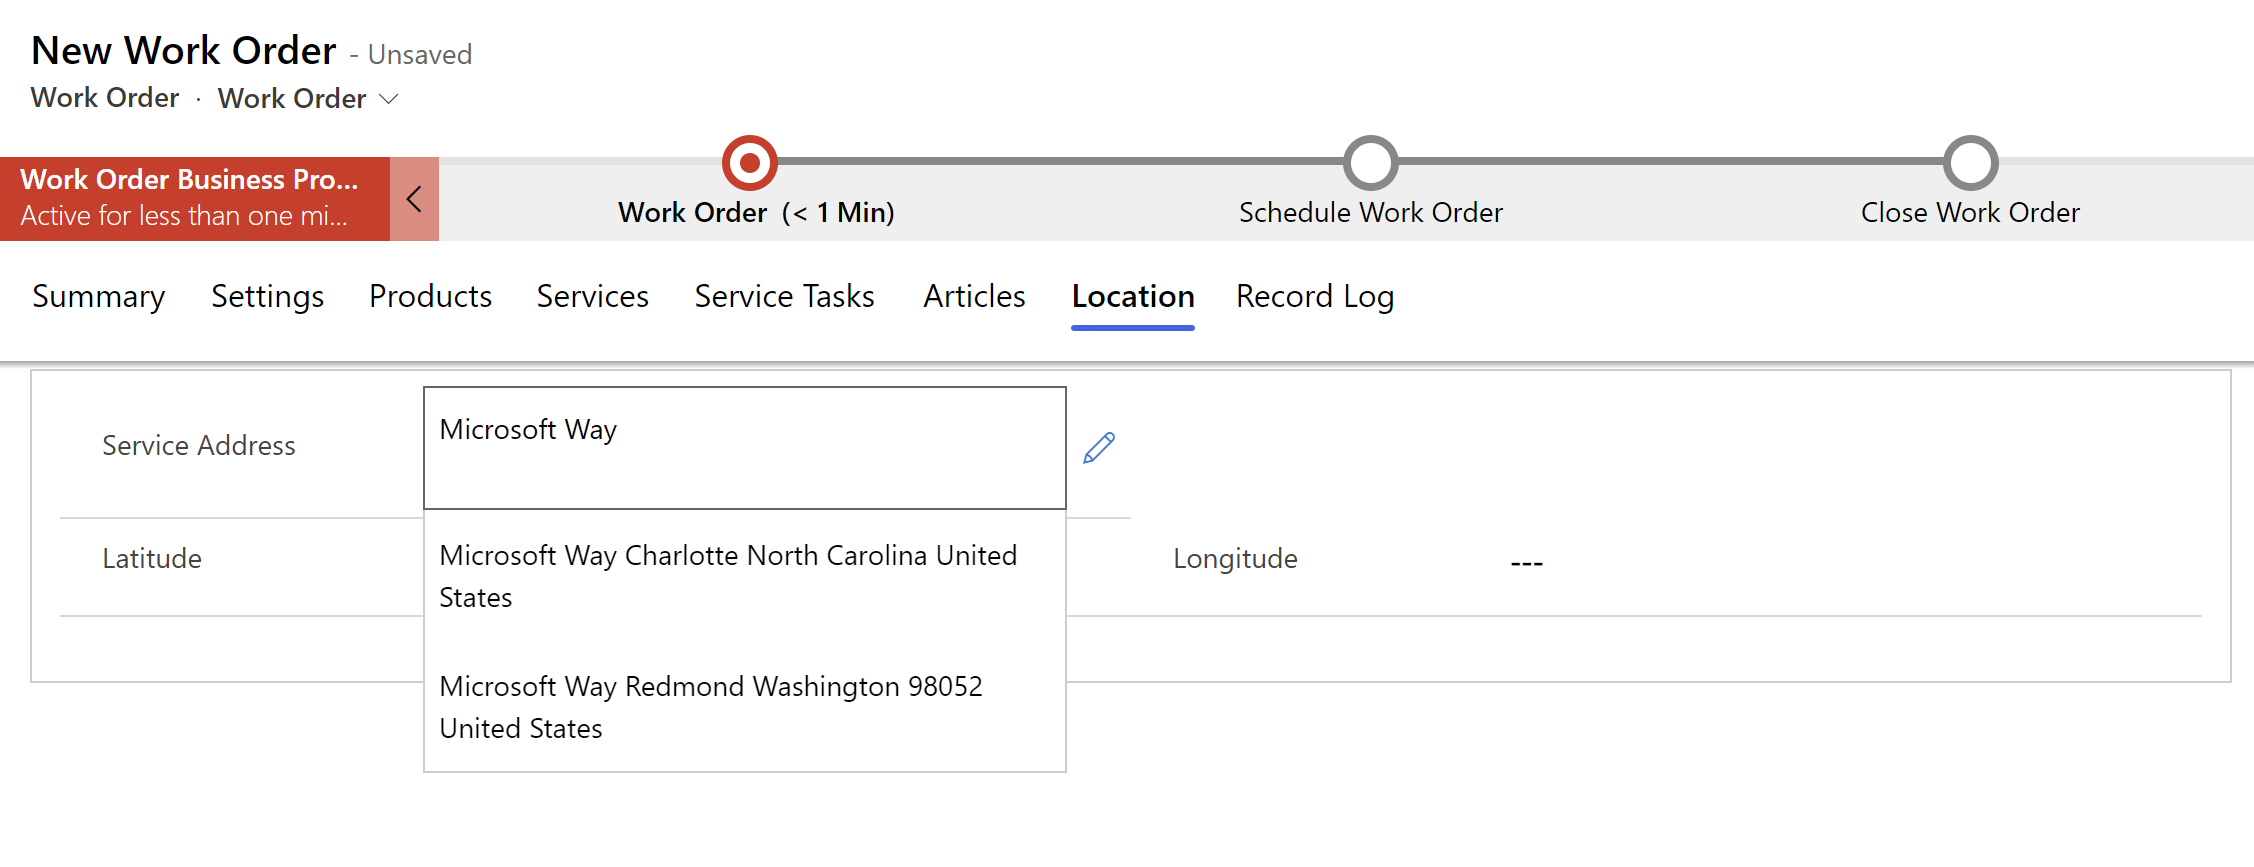 Екранна снимка на нова работна поръчка в полева услуга, показваща предложения за адреси в падащо меню.